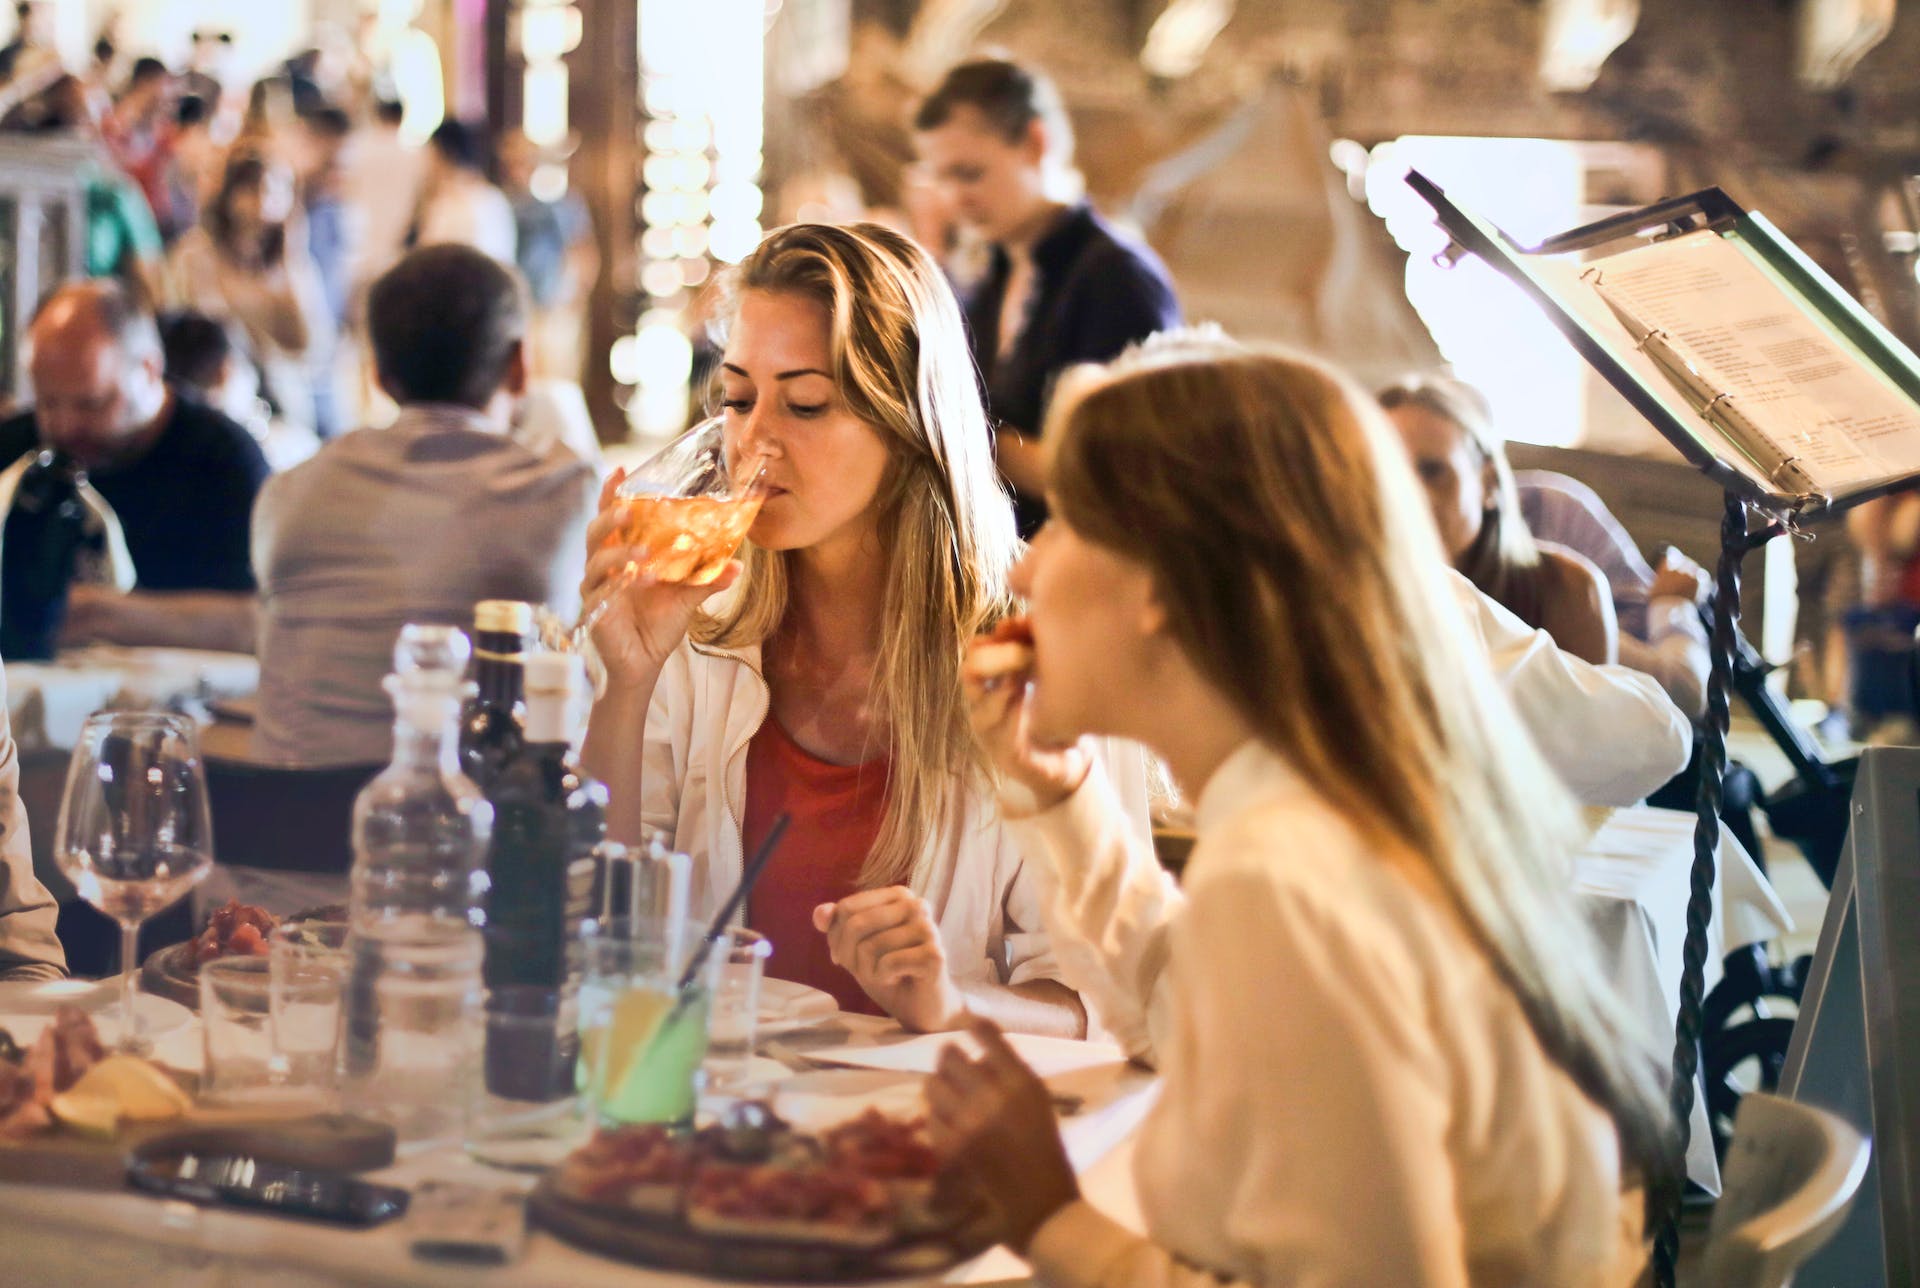 Femmes mangeant de la nourriture dans un restaurant | Source : Pexels